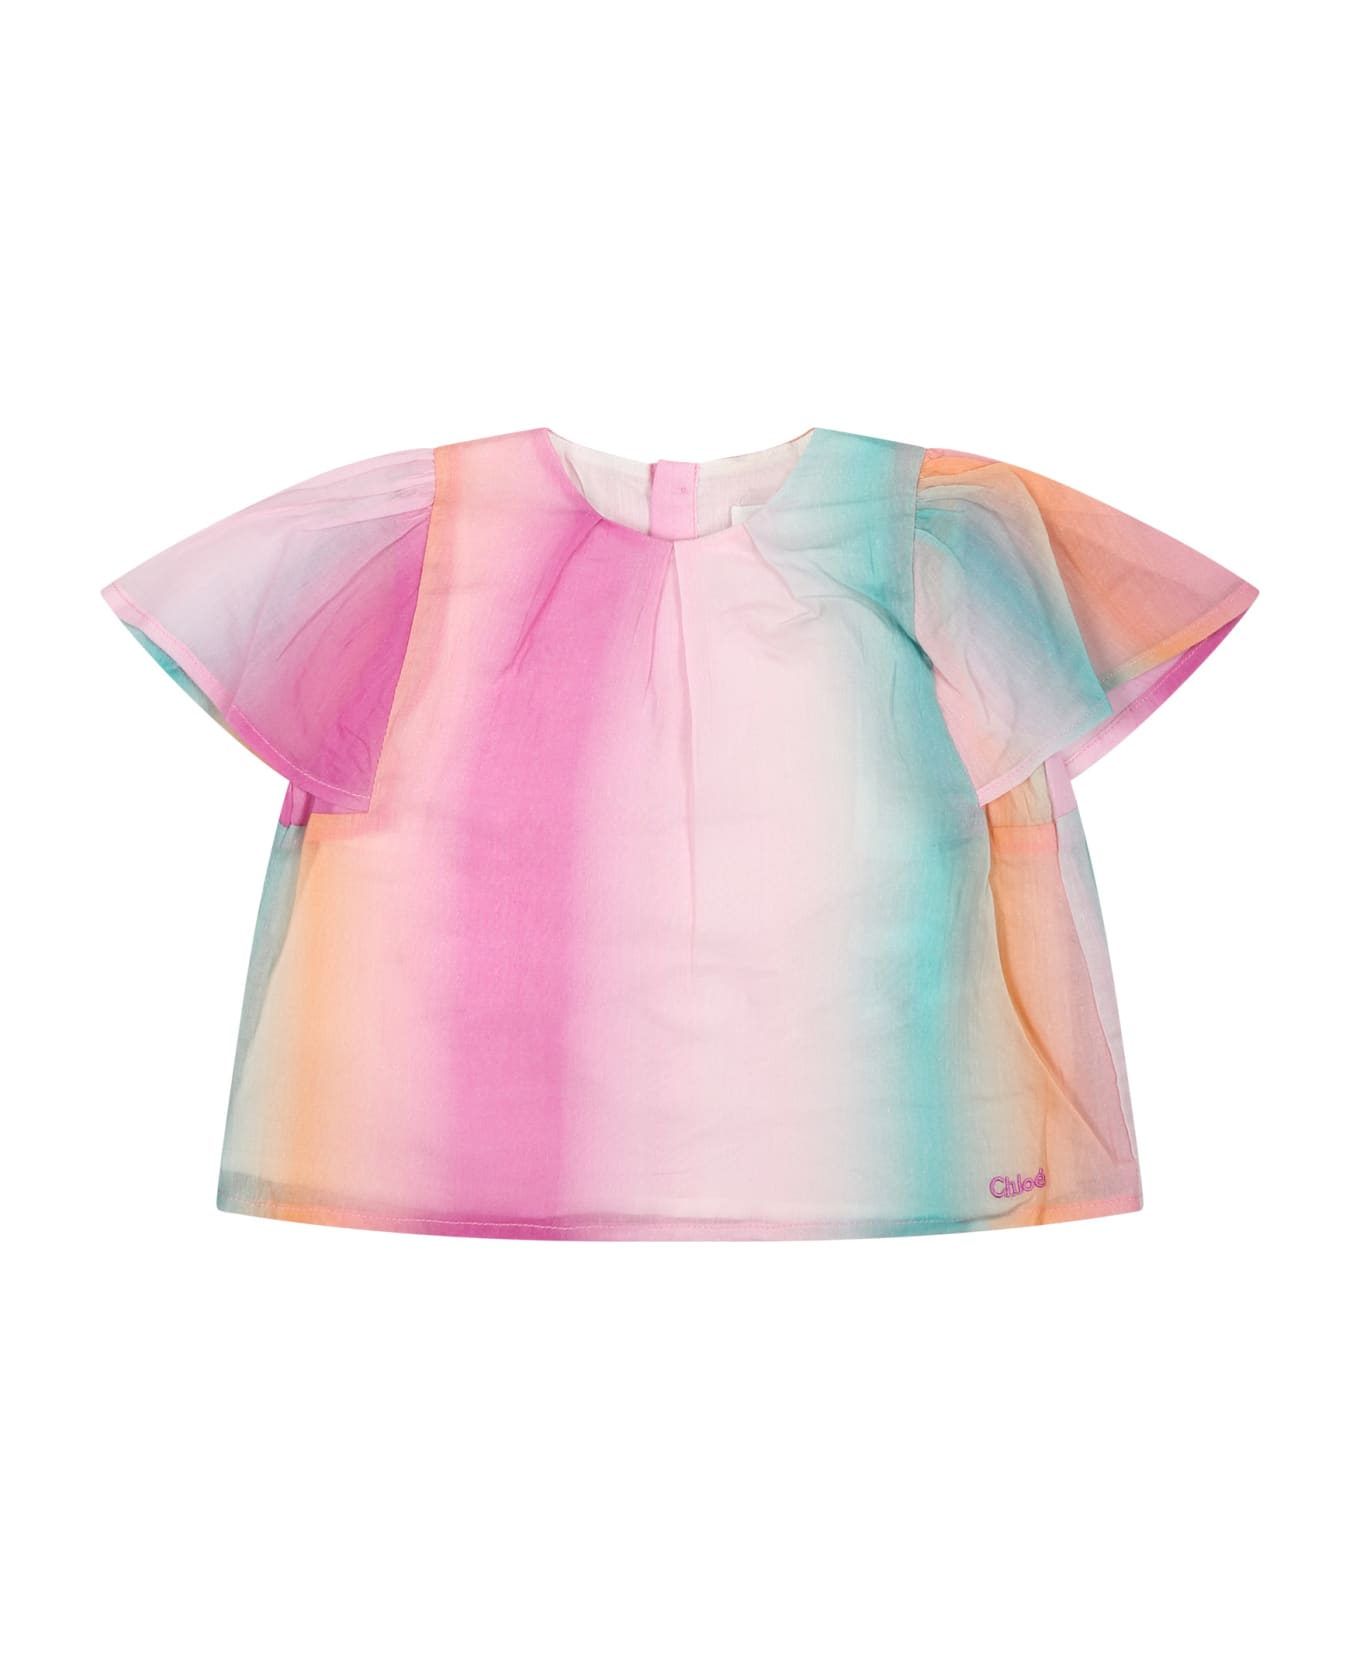 Chloé Multicolor Top For Baby Girl - Multicolor